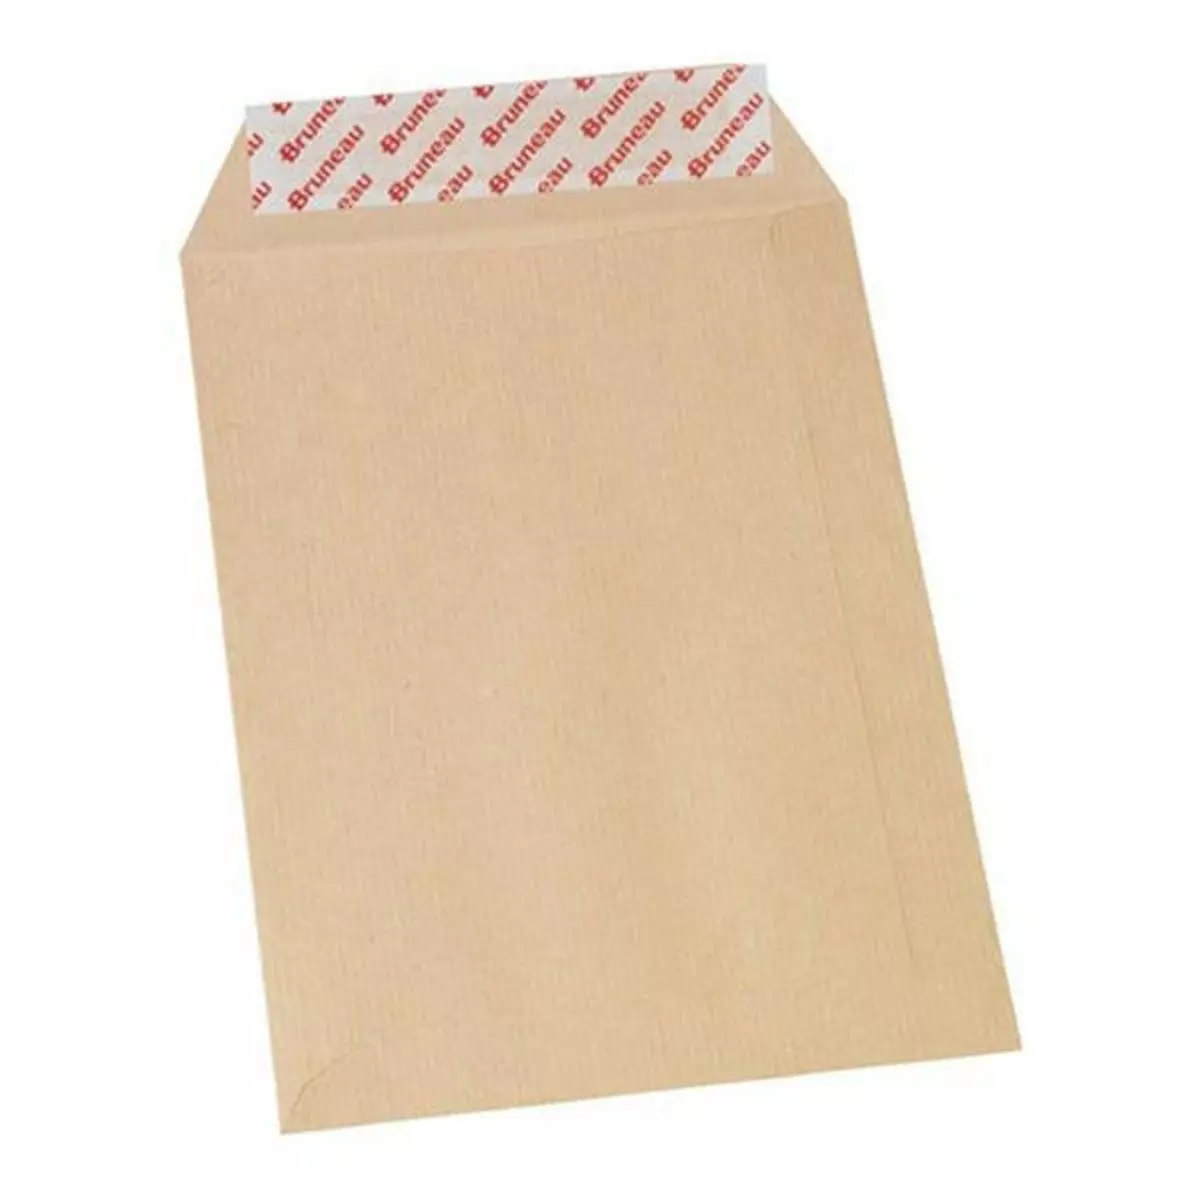 Bruneau 20 enveloppes en papier kraft 90 g - 16,2 x 22,9 cm